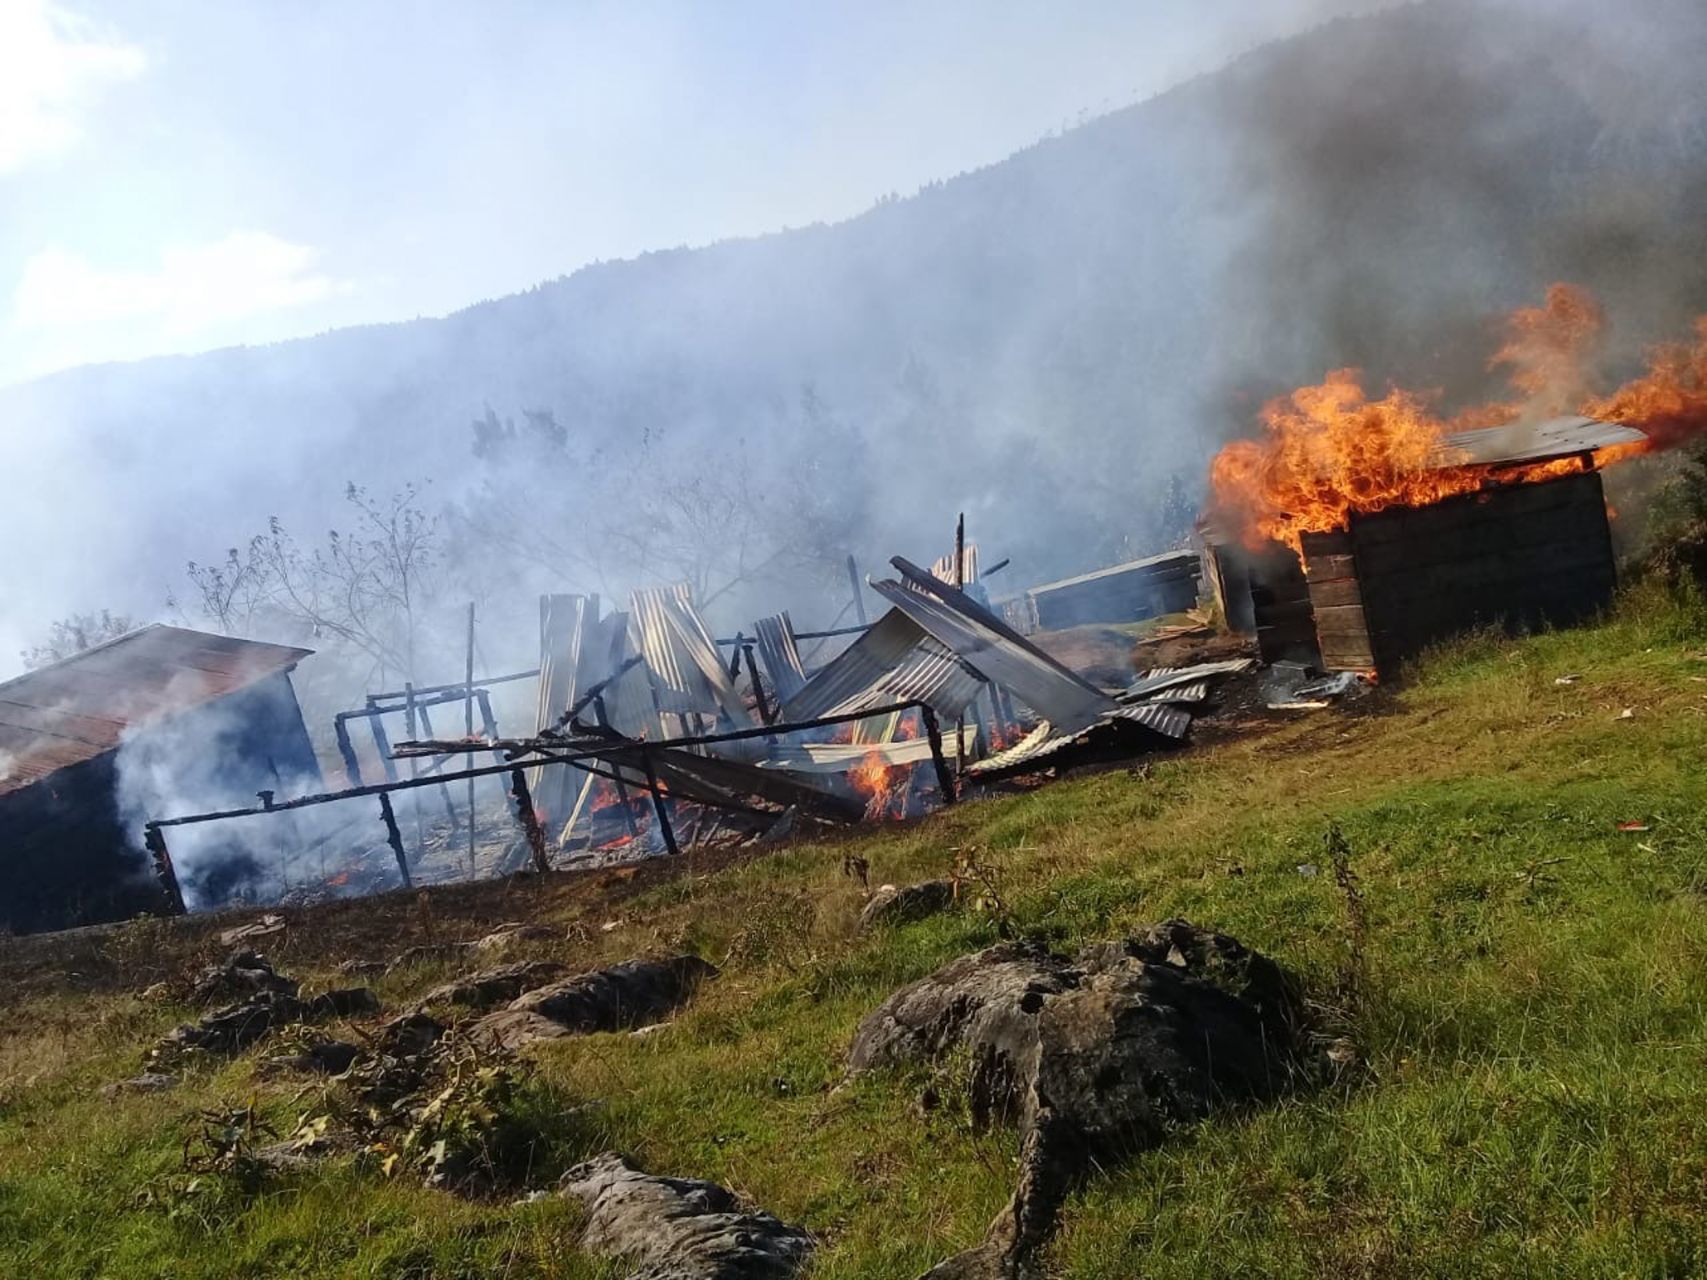 Tres desaparecidos, disparos y 23 casas quemadas, el terrible saldo de una  disputa agraria en San Cristóbal de las Casas, Chiapas - Infobae